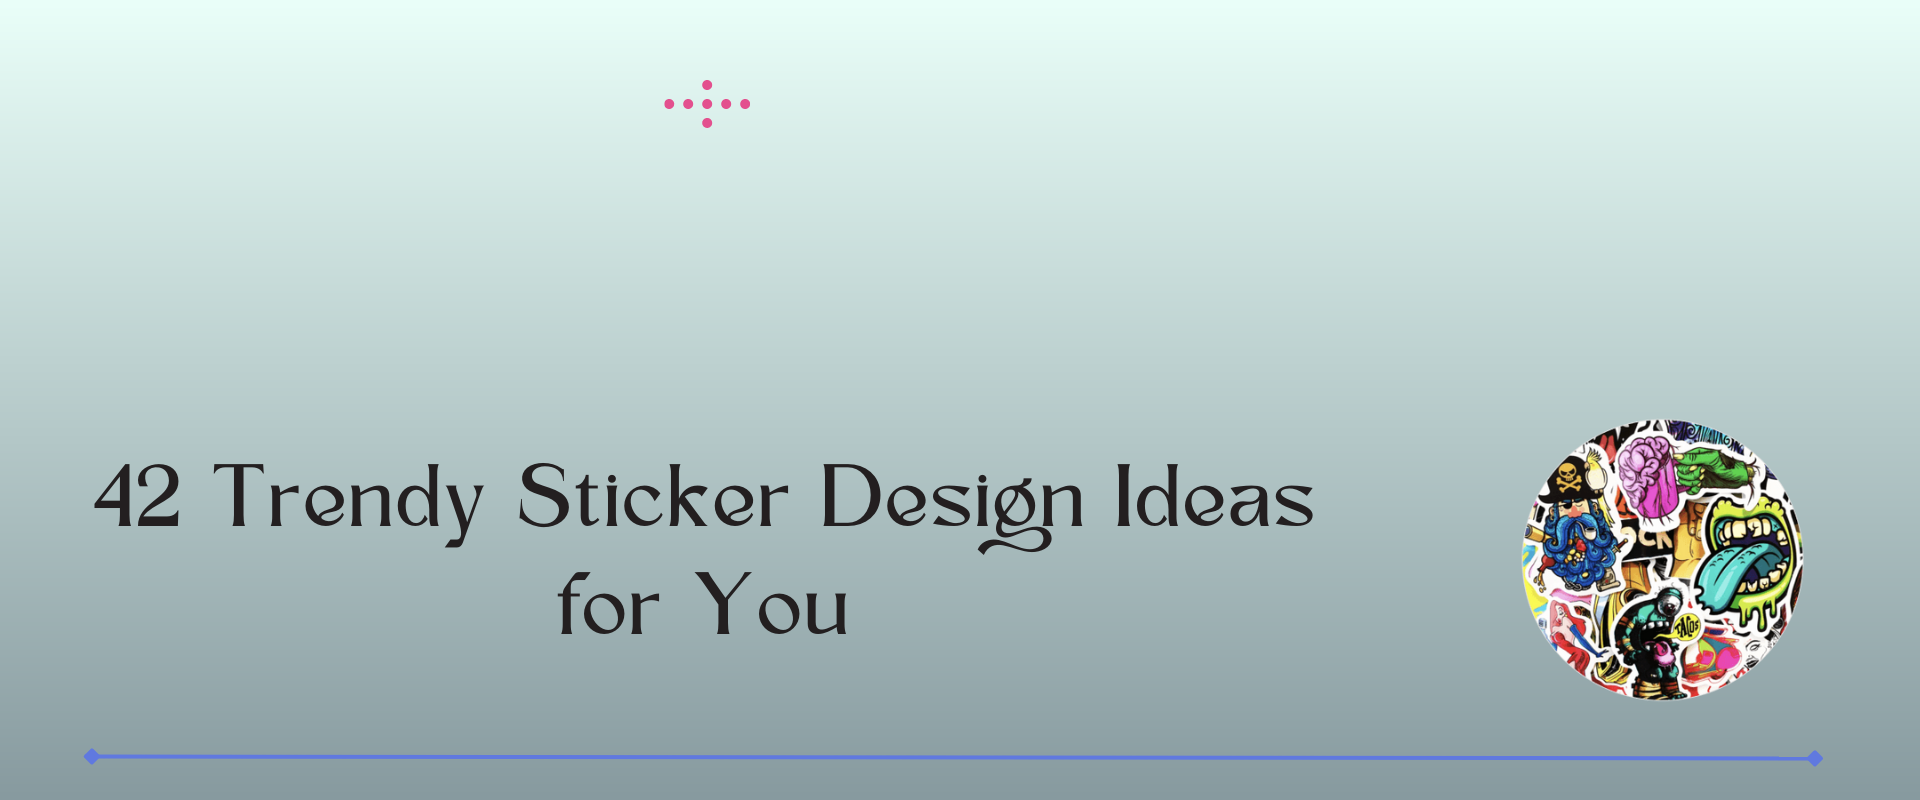 sticker design ideas